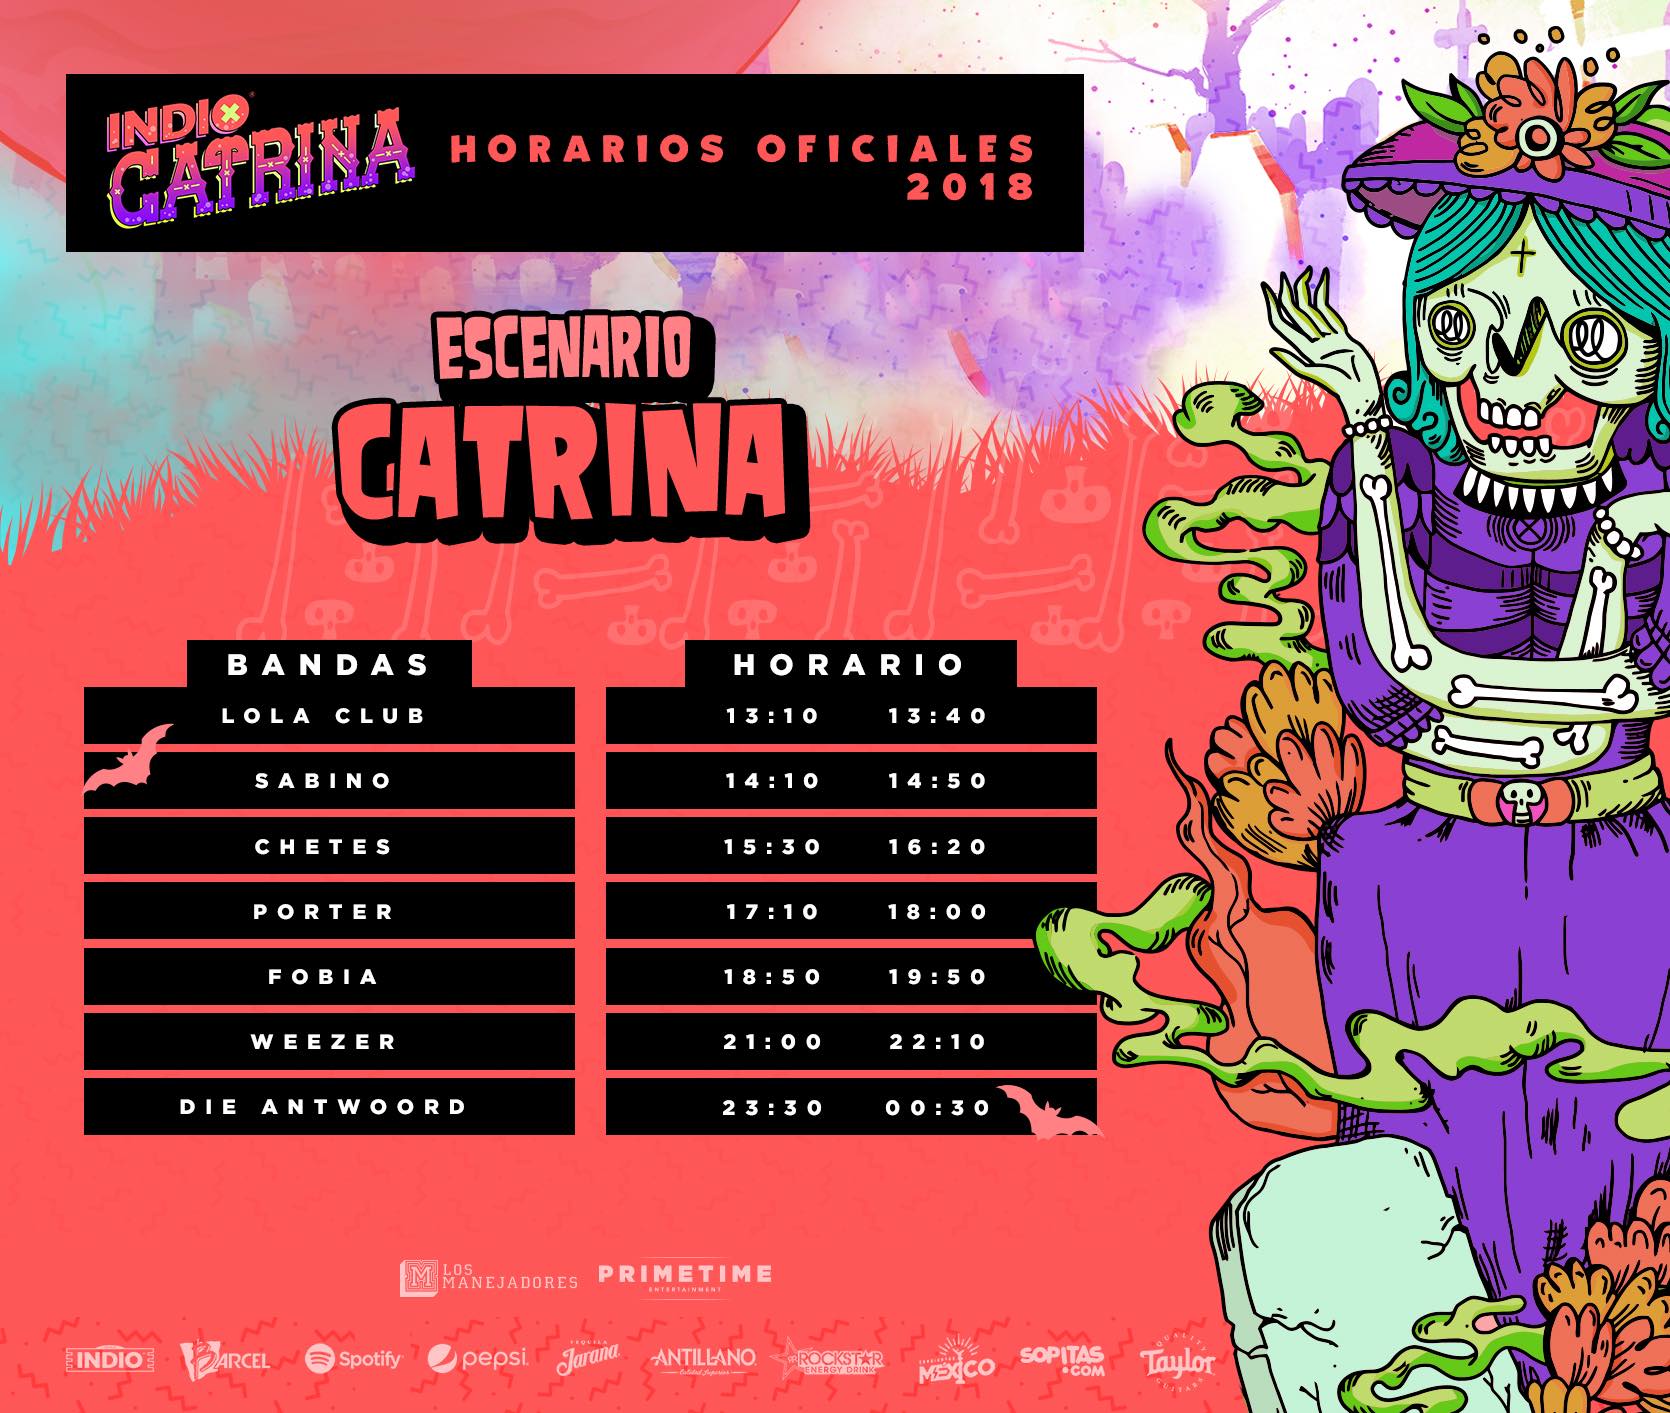 ¿Listos para rockear? ¡Ya están los horarios del Festival Catrina 2018!